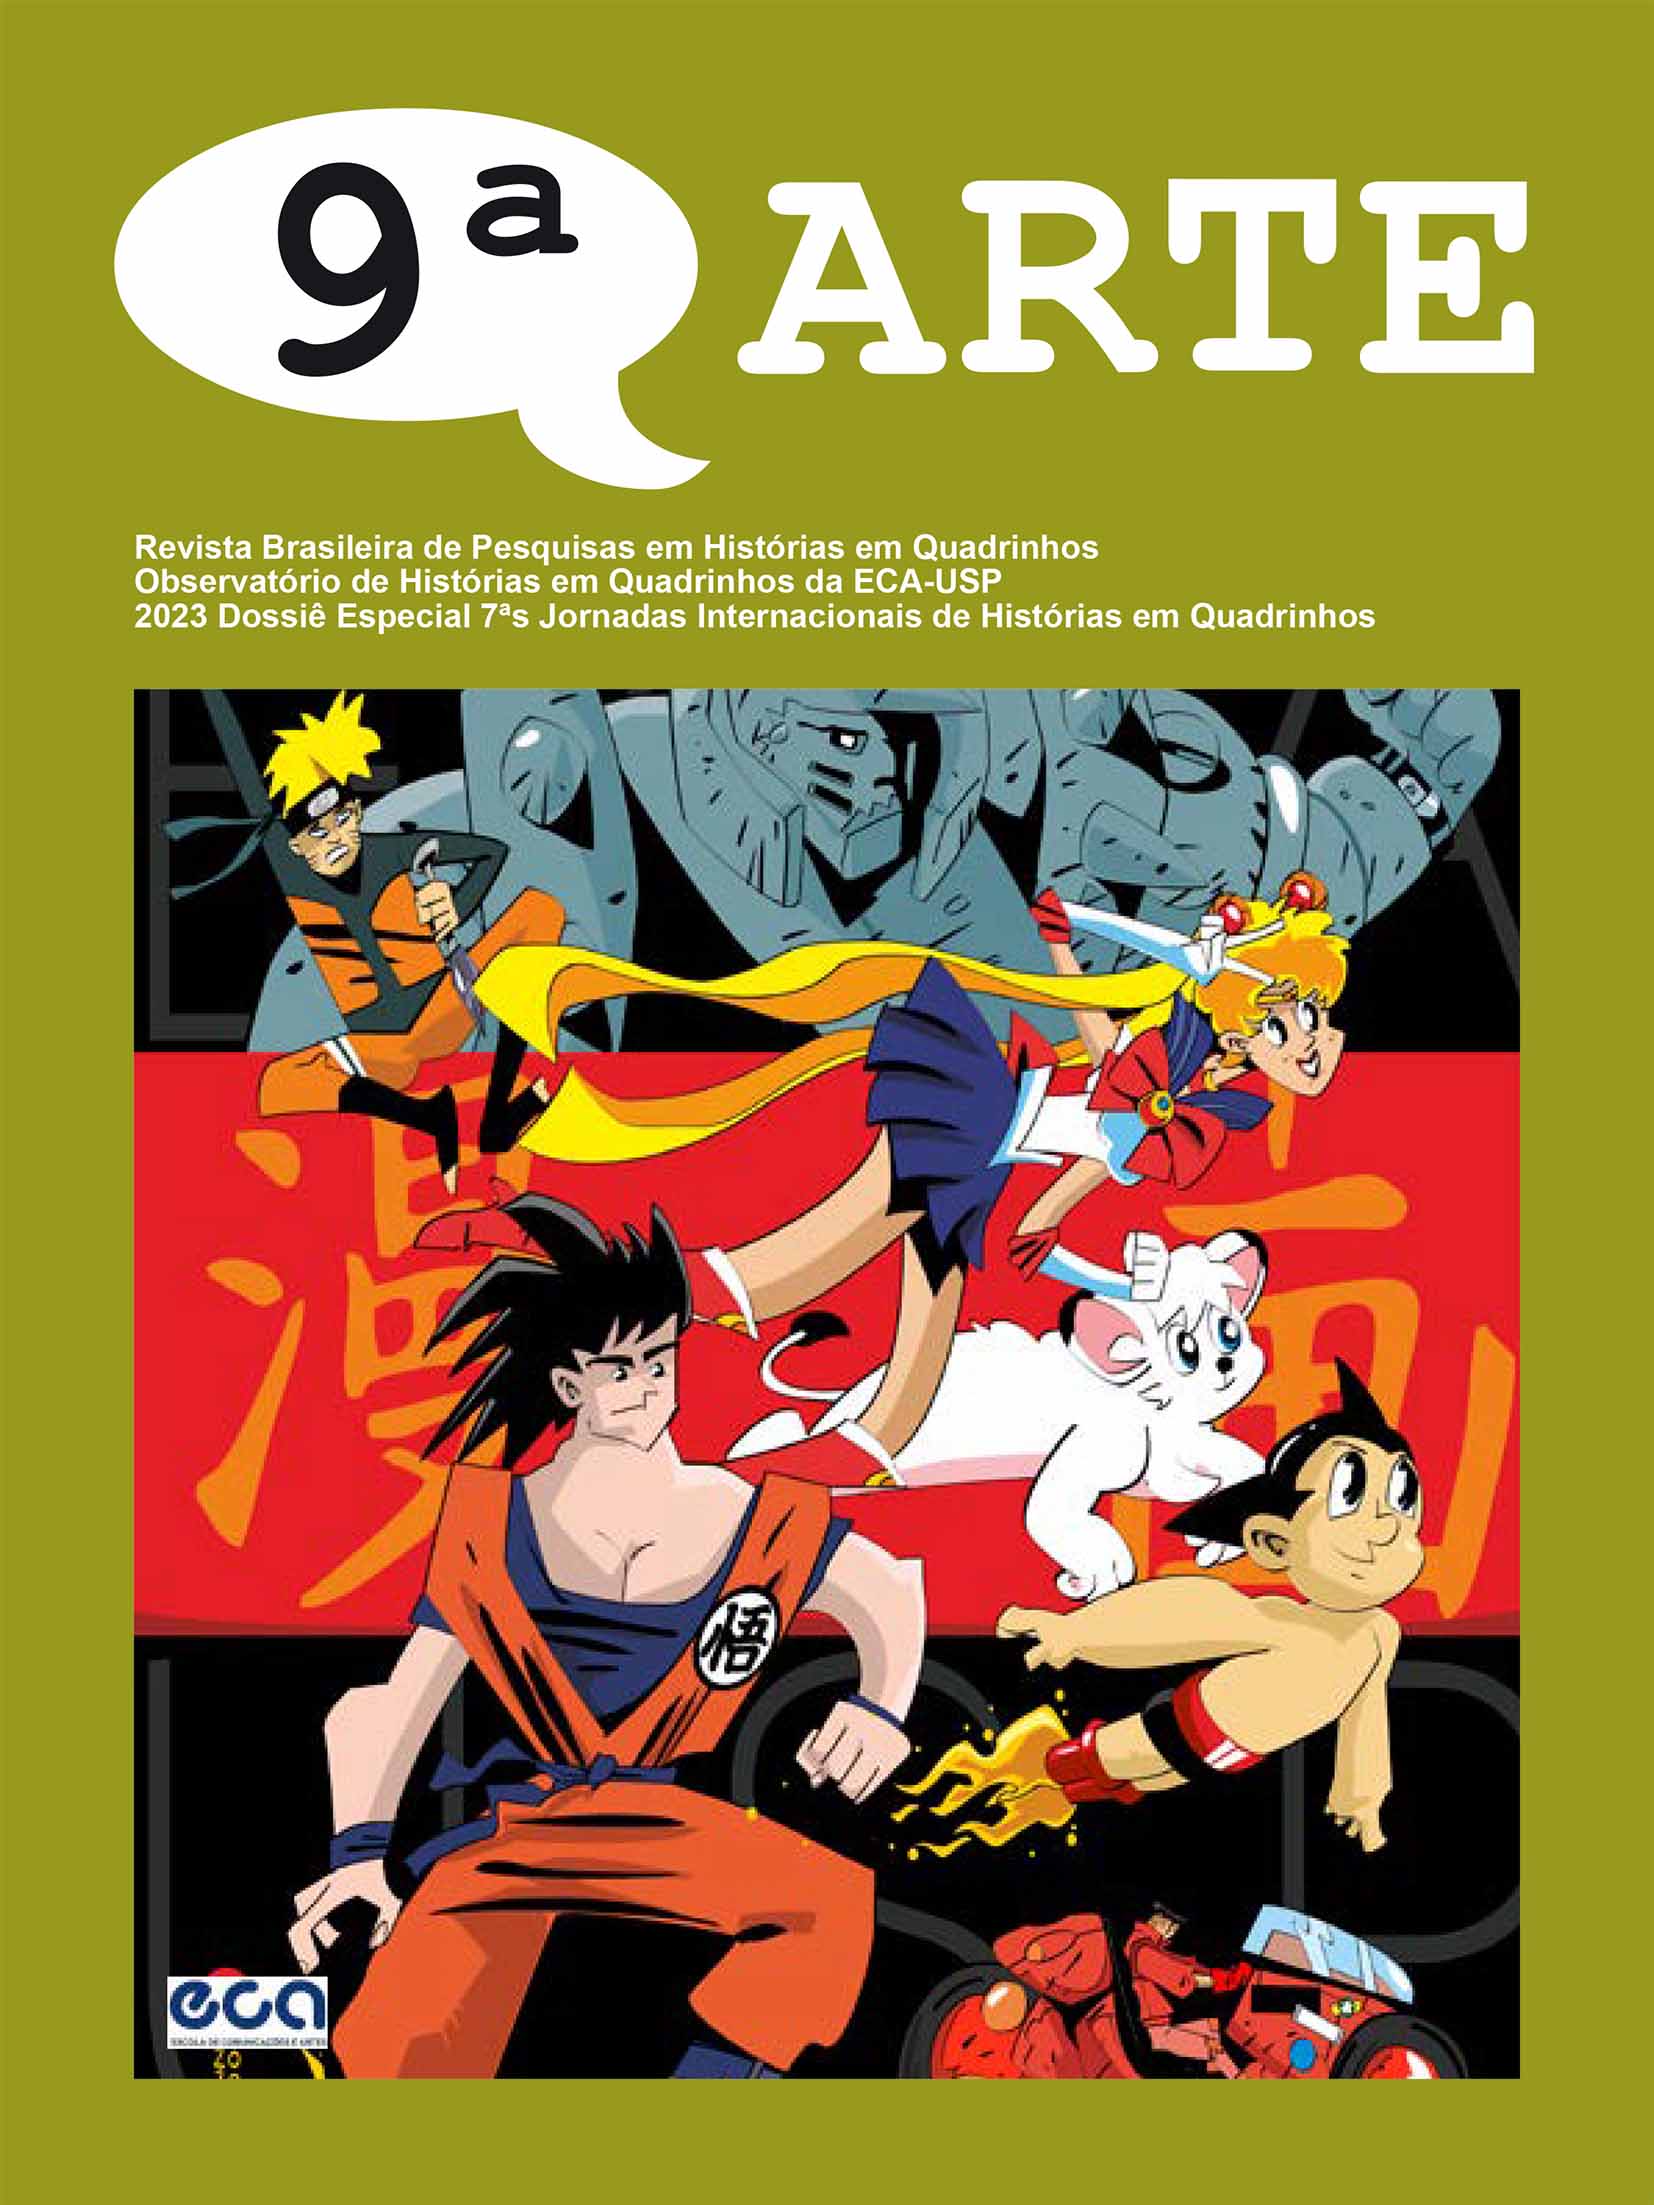 					View 2023: Dossiê das 7as Jornadas Internacionais de Histórias em Quadrinhos
				